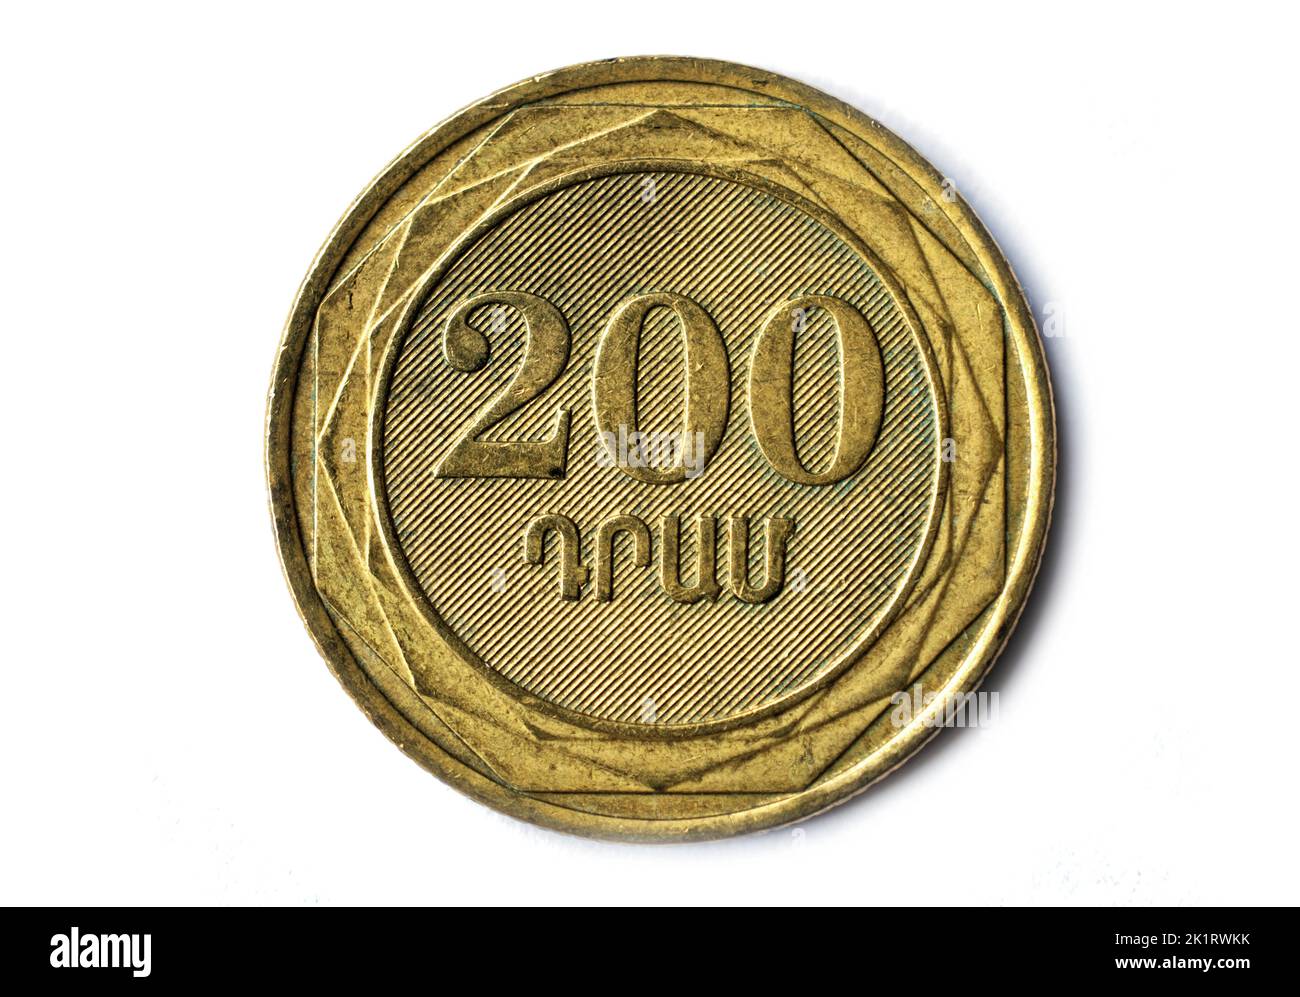 Photo coins Armenia, 200 dram, 2003 Stock Photo